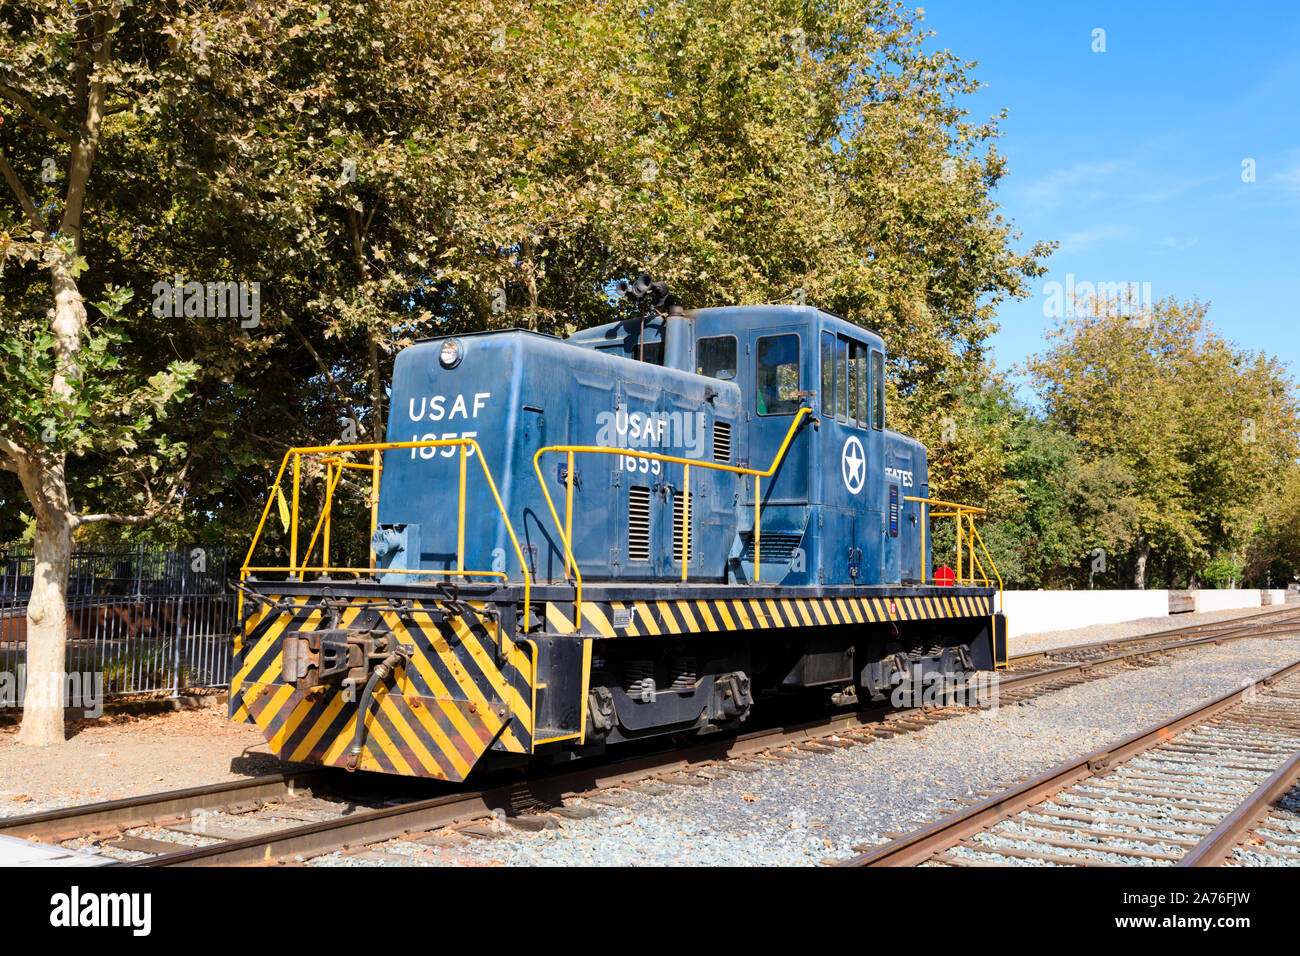 USAF 1655 ex locomotive de l'utilitaire au California State Railroad Museum, Sacramento, capitale de l'État de Californie, États-Unis d'Amérique. Banque D'Images